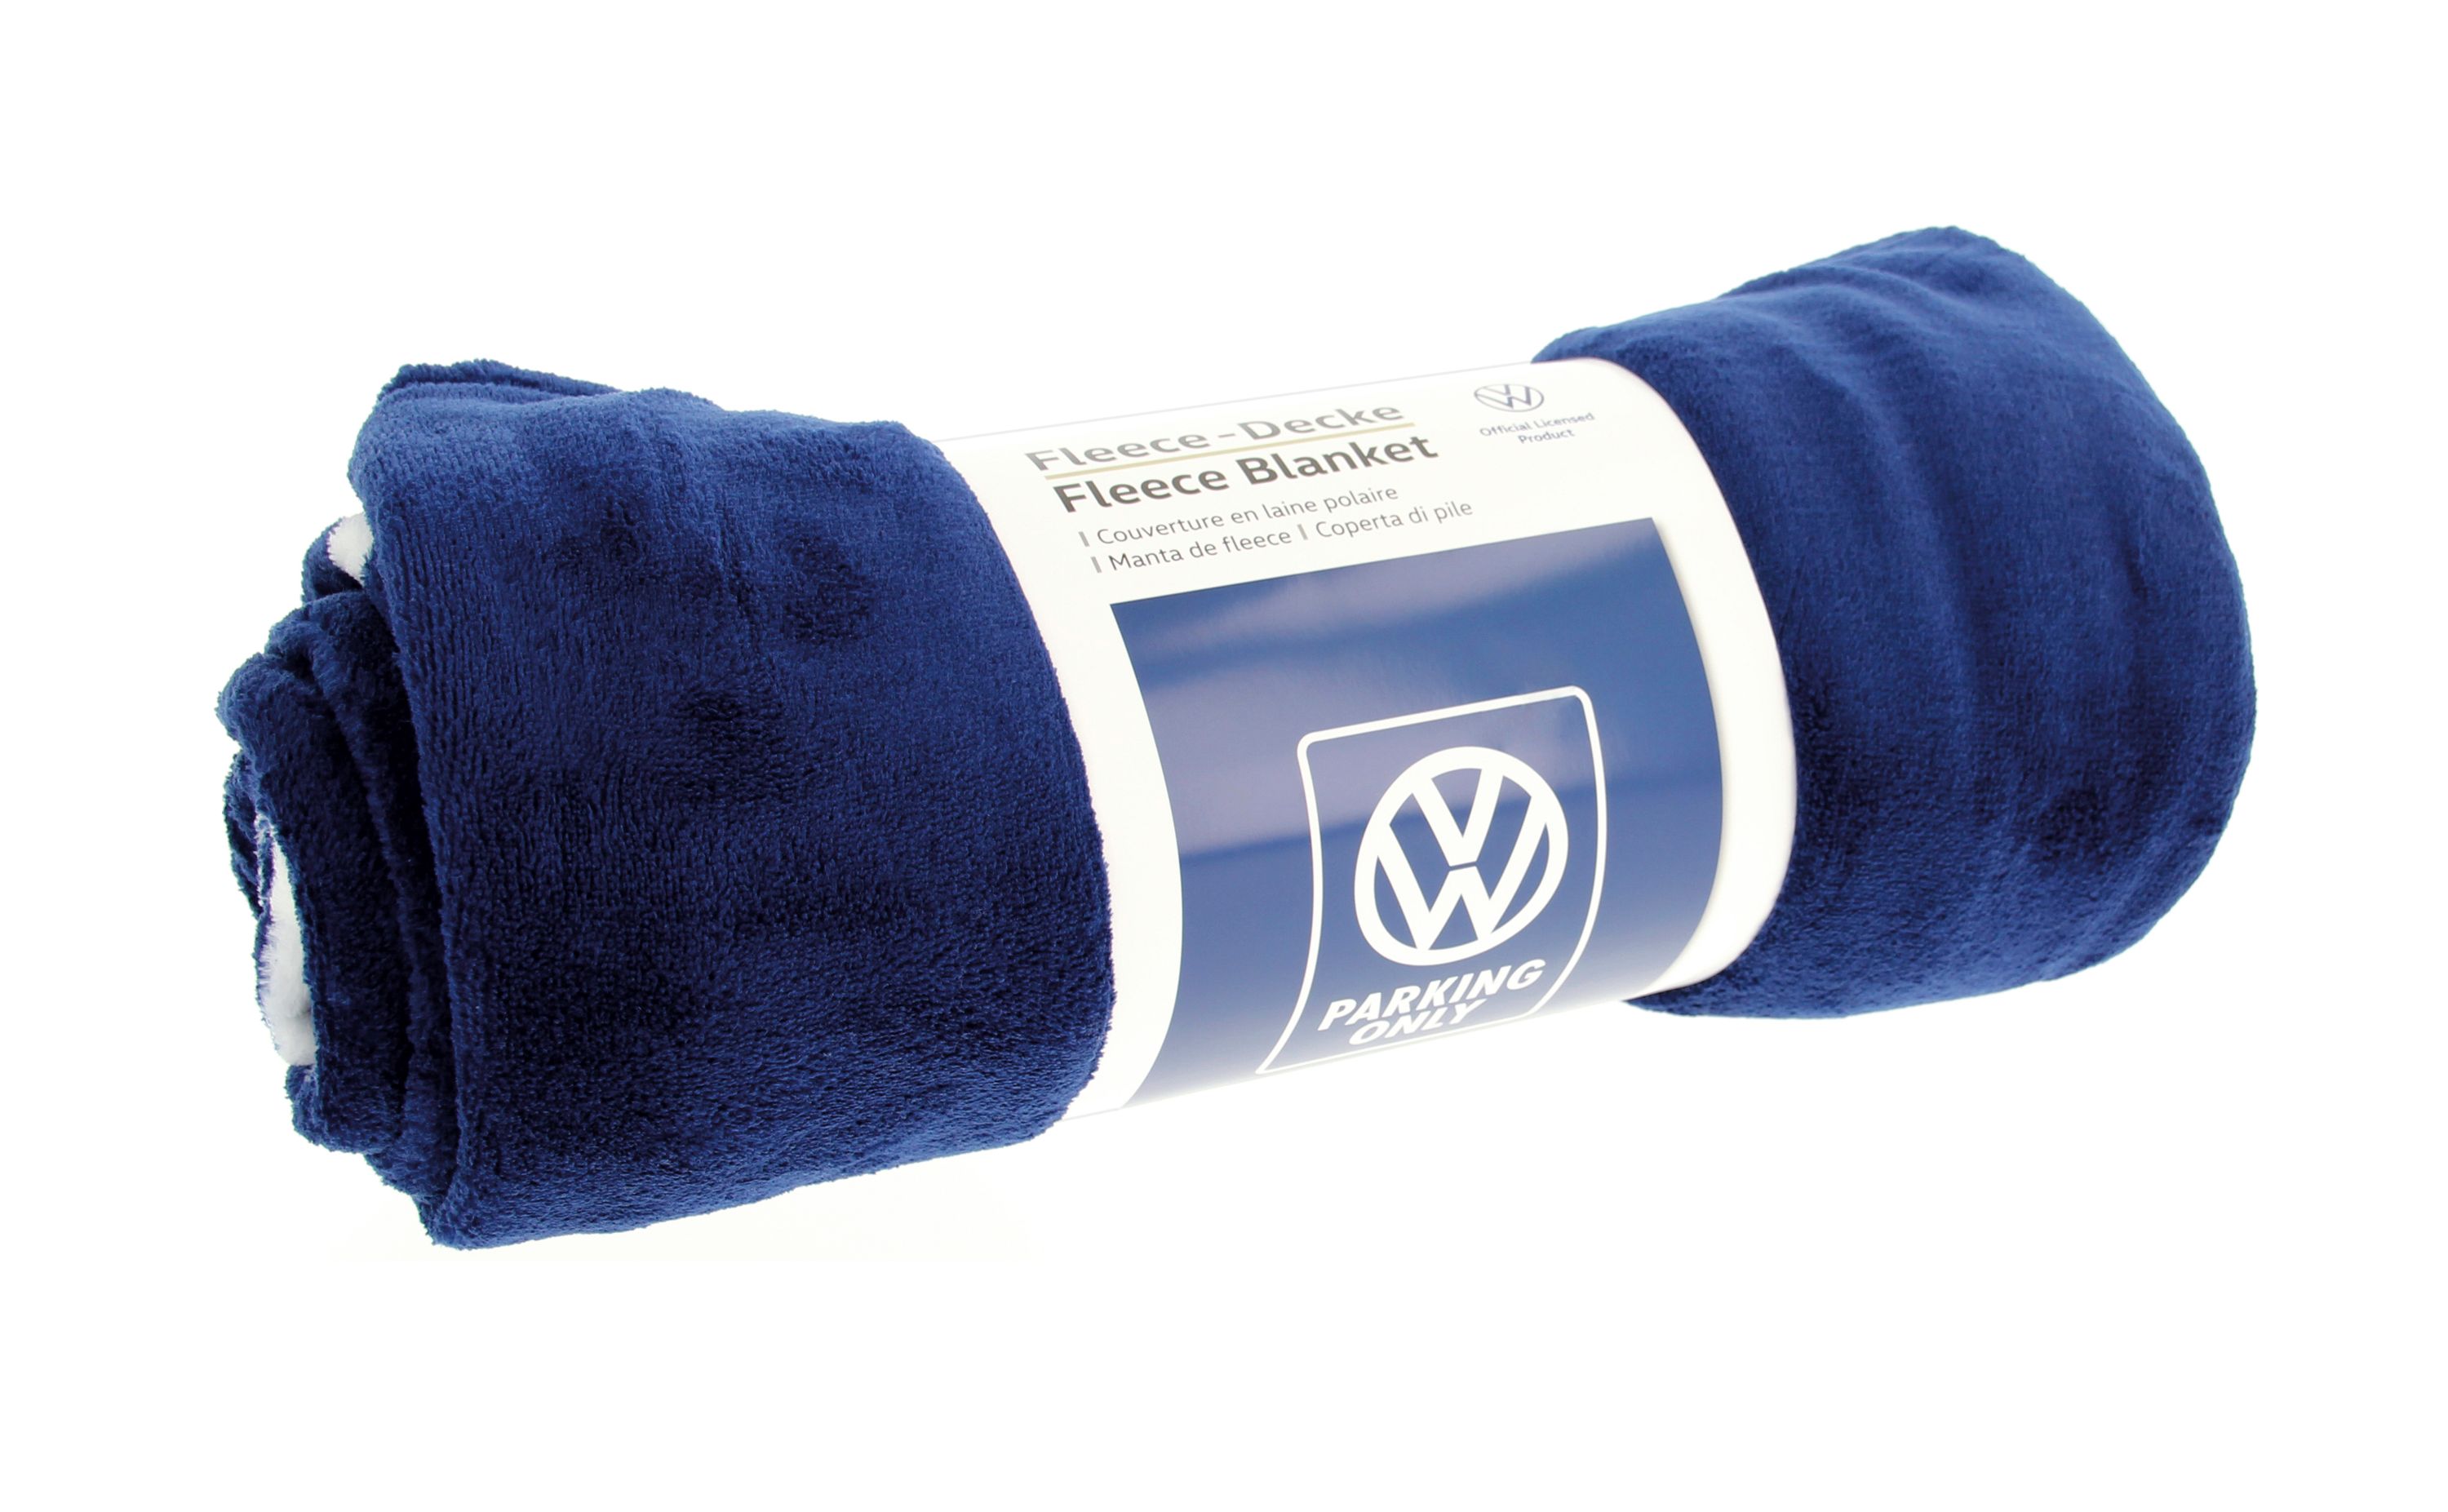 Coperta in pile VW Volkswagen, morbida e accogliente (solo VW, motivo T1 o Maggiolino) (150x200cm)
